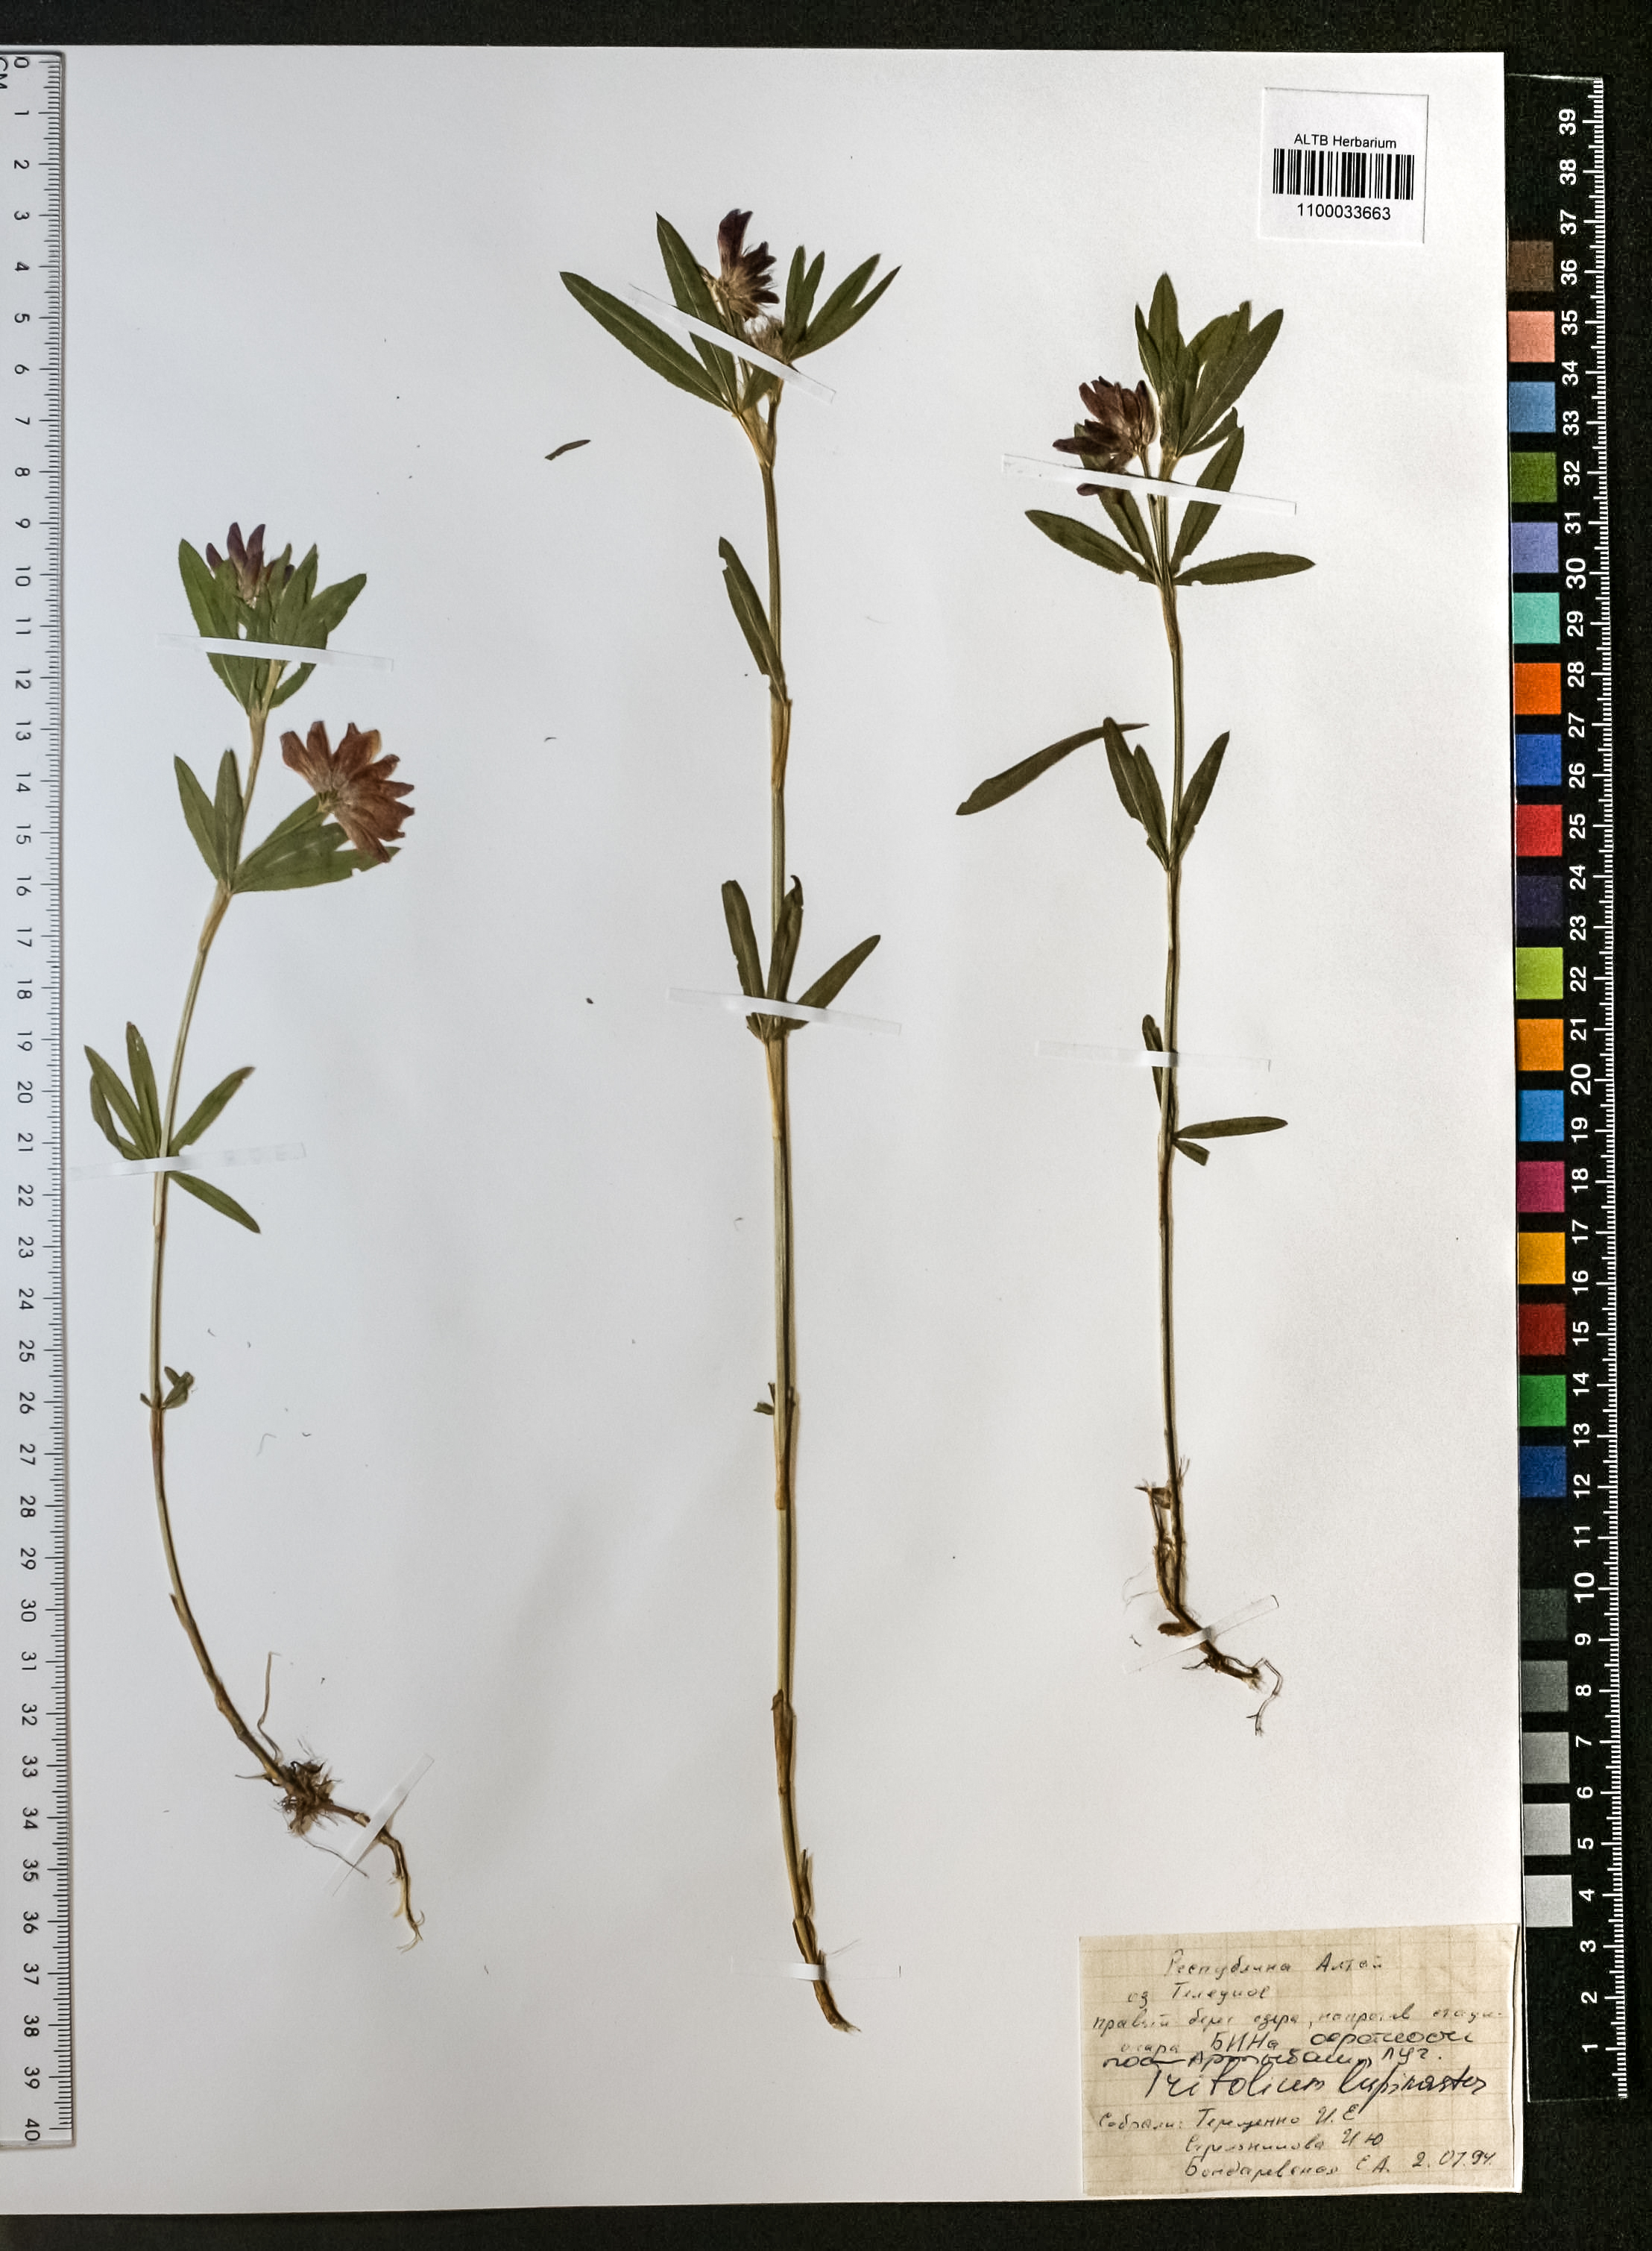 Trifolium lupinaster L.